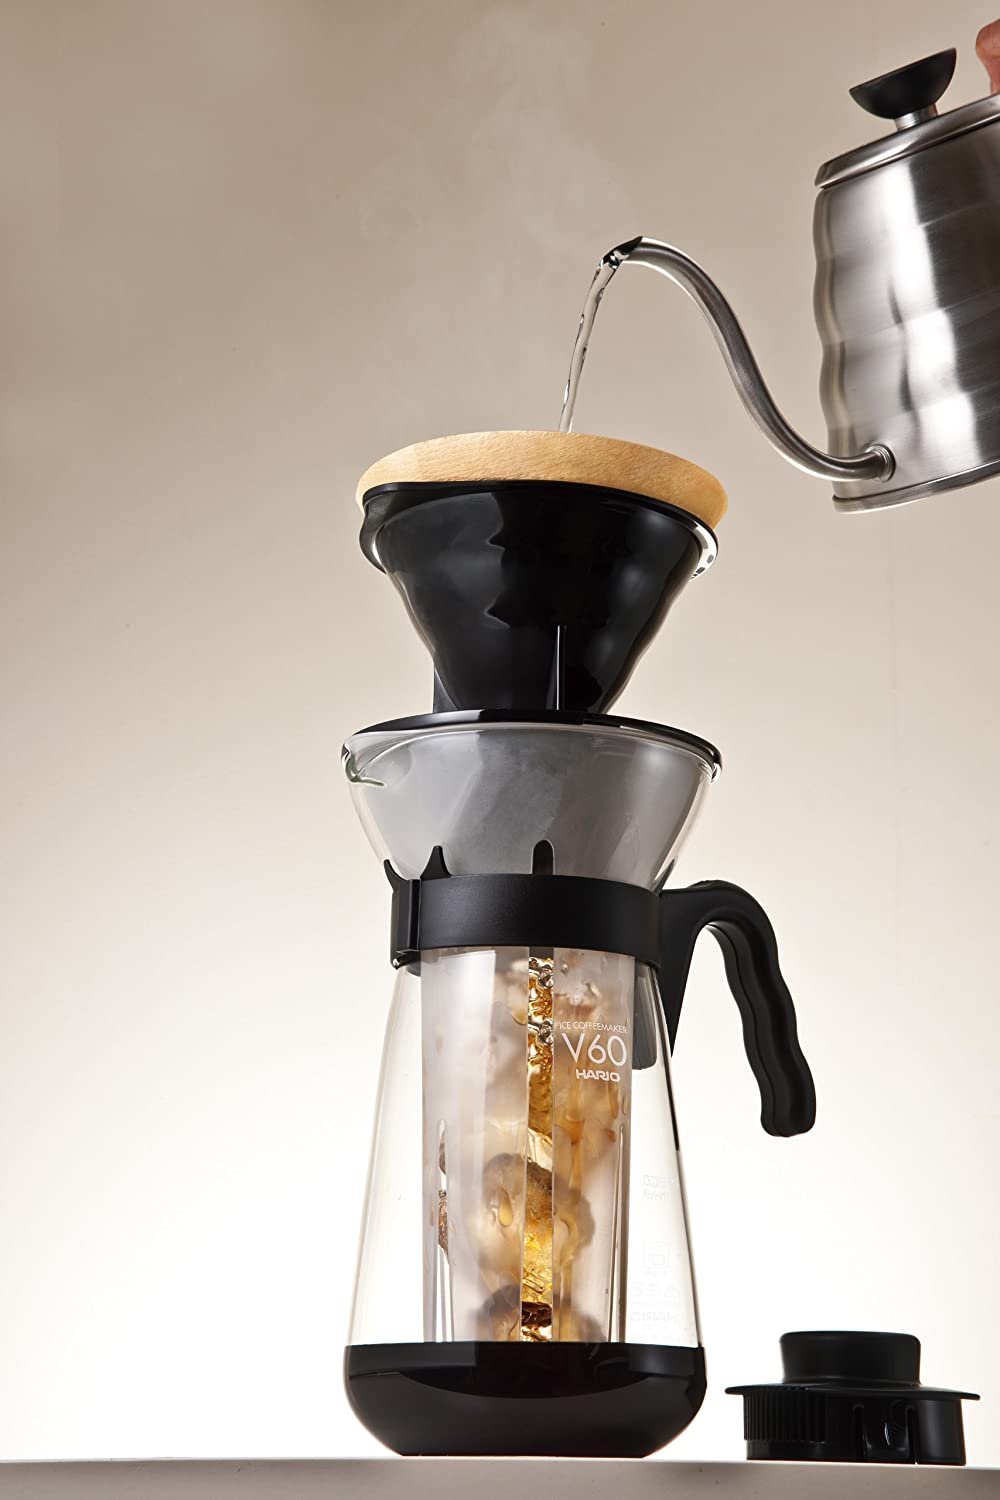 Cafetera Fretta V60 Hario Original Ice Coffee Maker Coldbrew